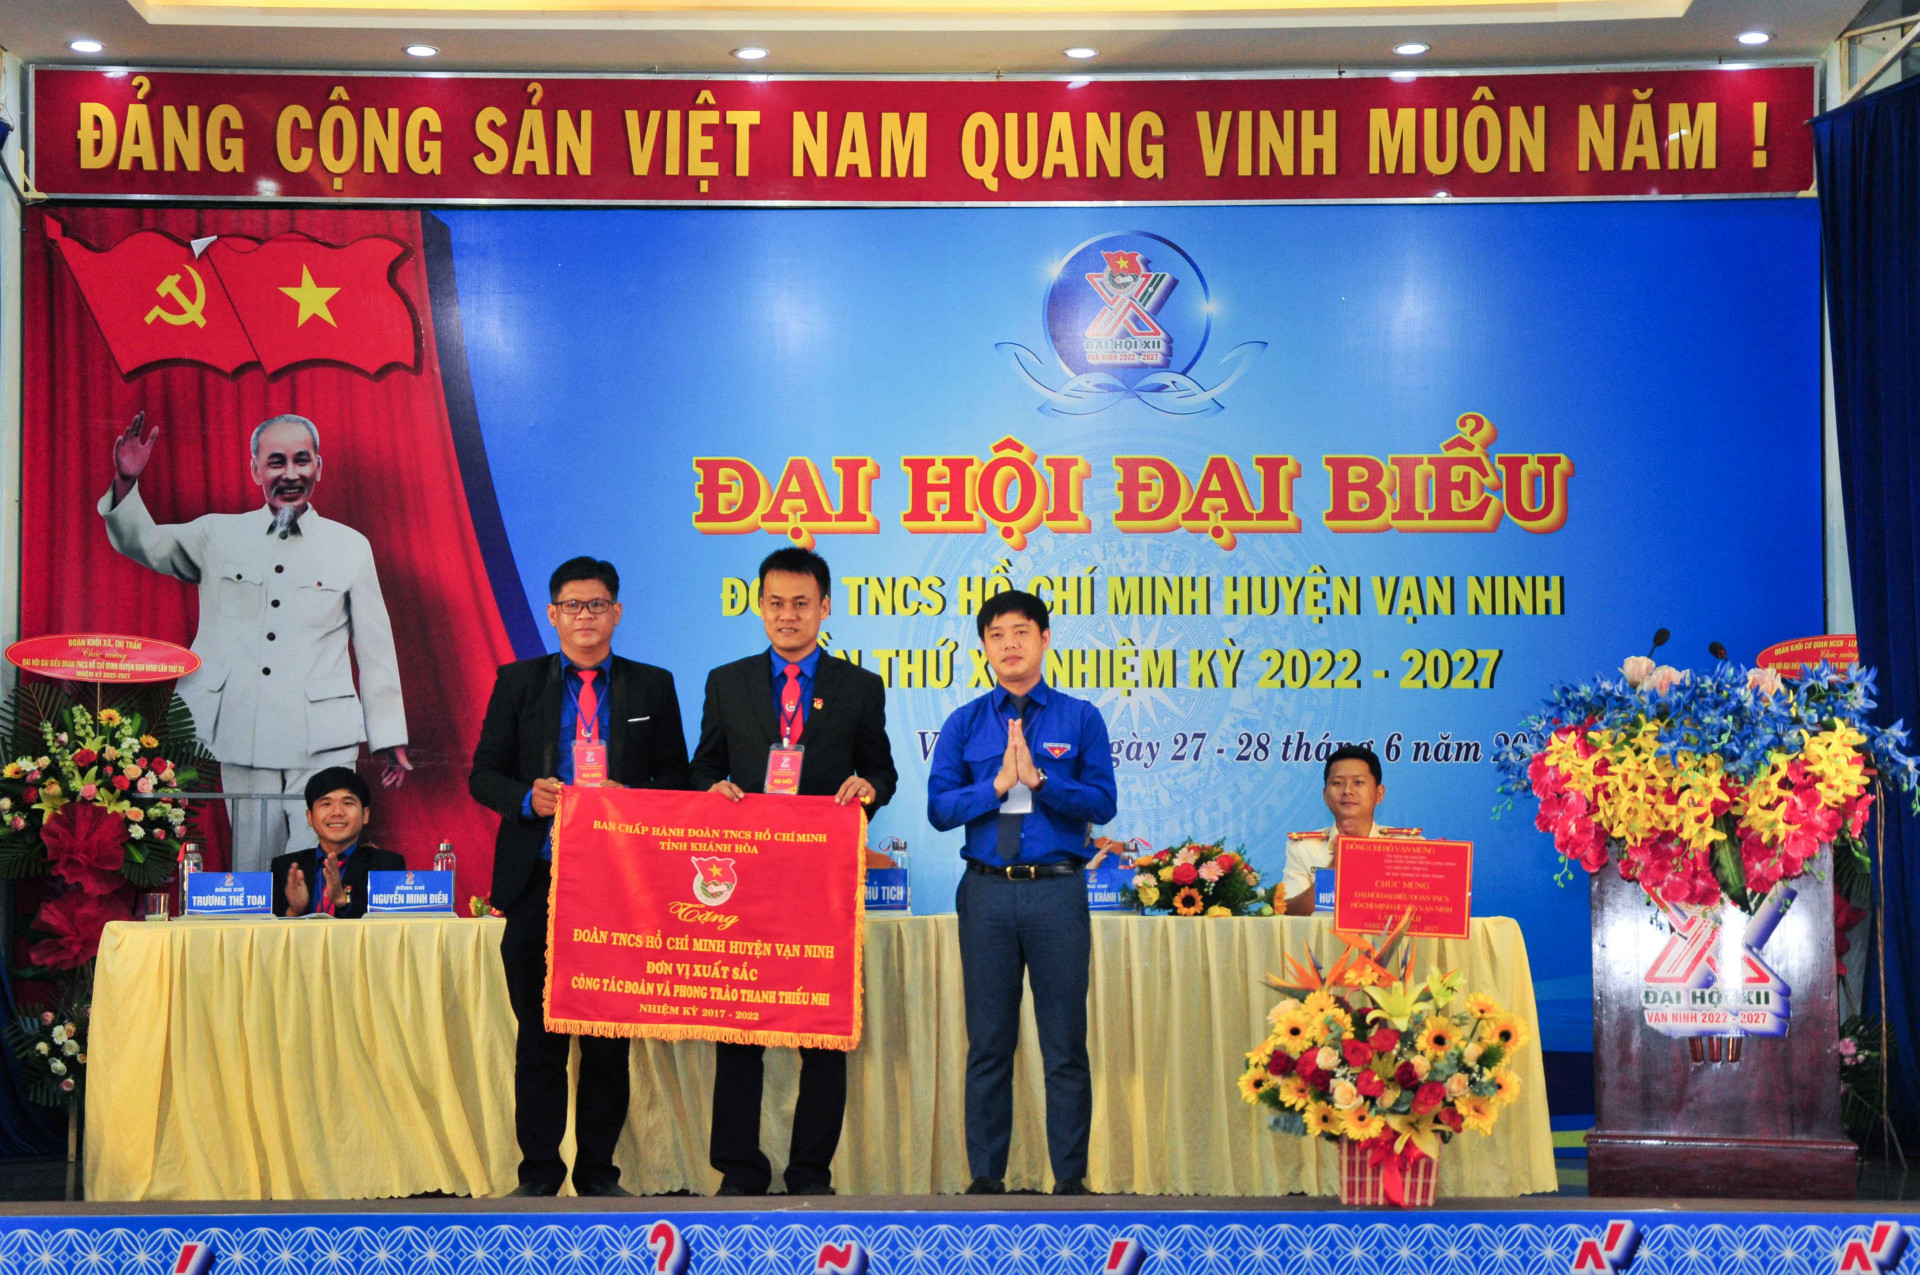 Tỉnh đoàn trao cờ thi đua xuất sắc cho Huyện đoàn Vạn Ninh